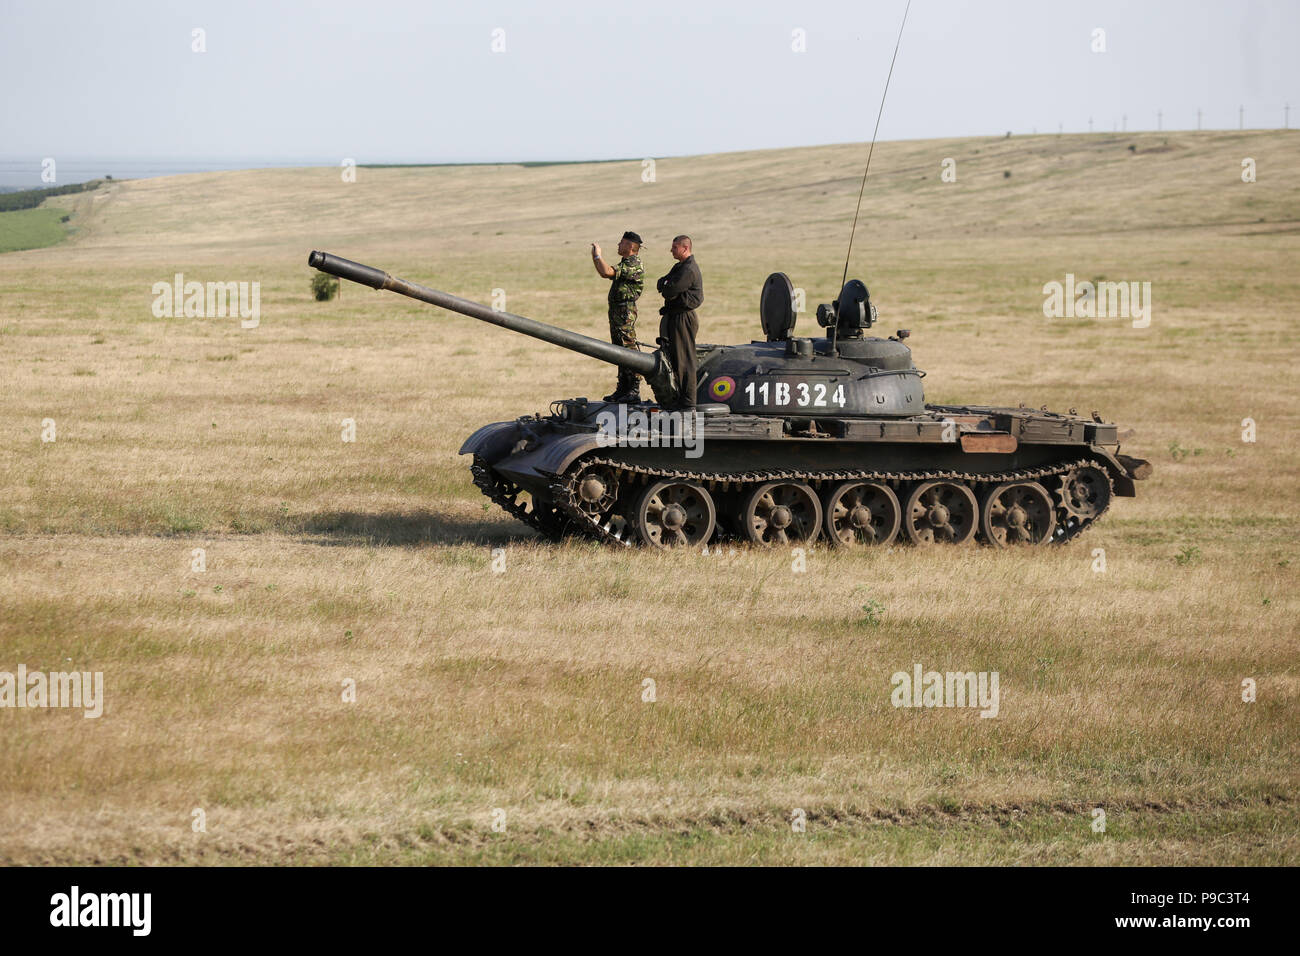 BABADAG, Rumänien - 23. JUNI 2018: Zwei rumänische Soldaten bleiben auf einem russischen T-55 Light Tank, während einer Räumungsübung Stockfoto